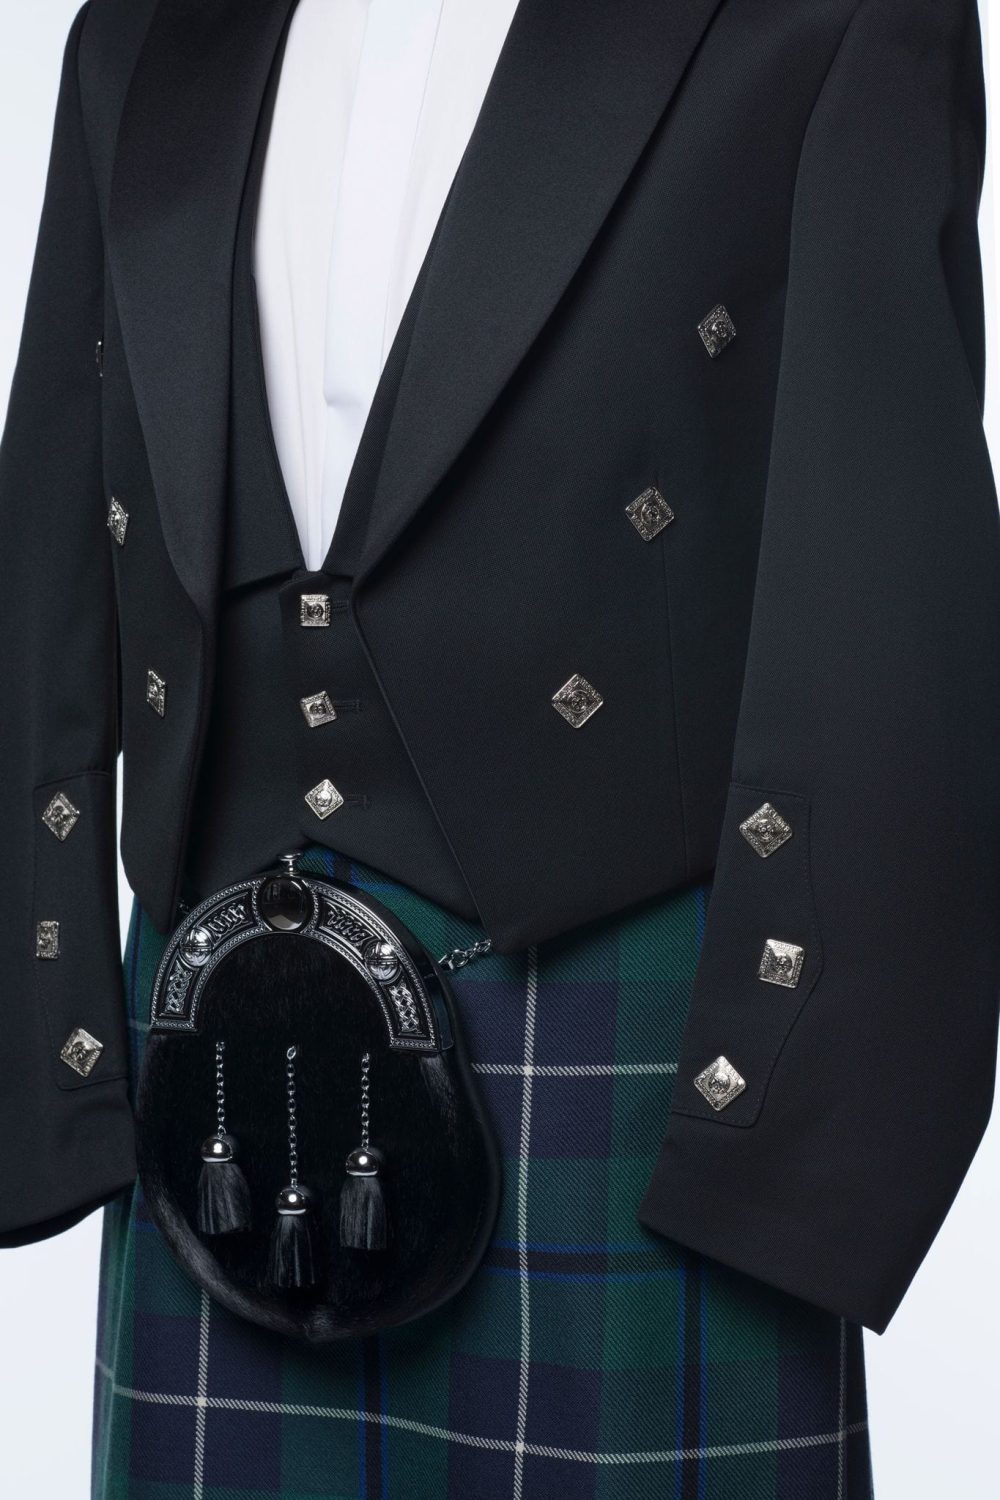 A closeup photo of Prince Charlie Kilt Outfit.